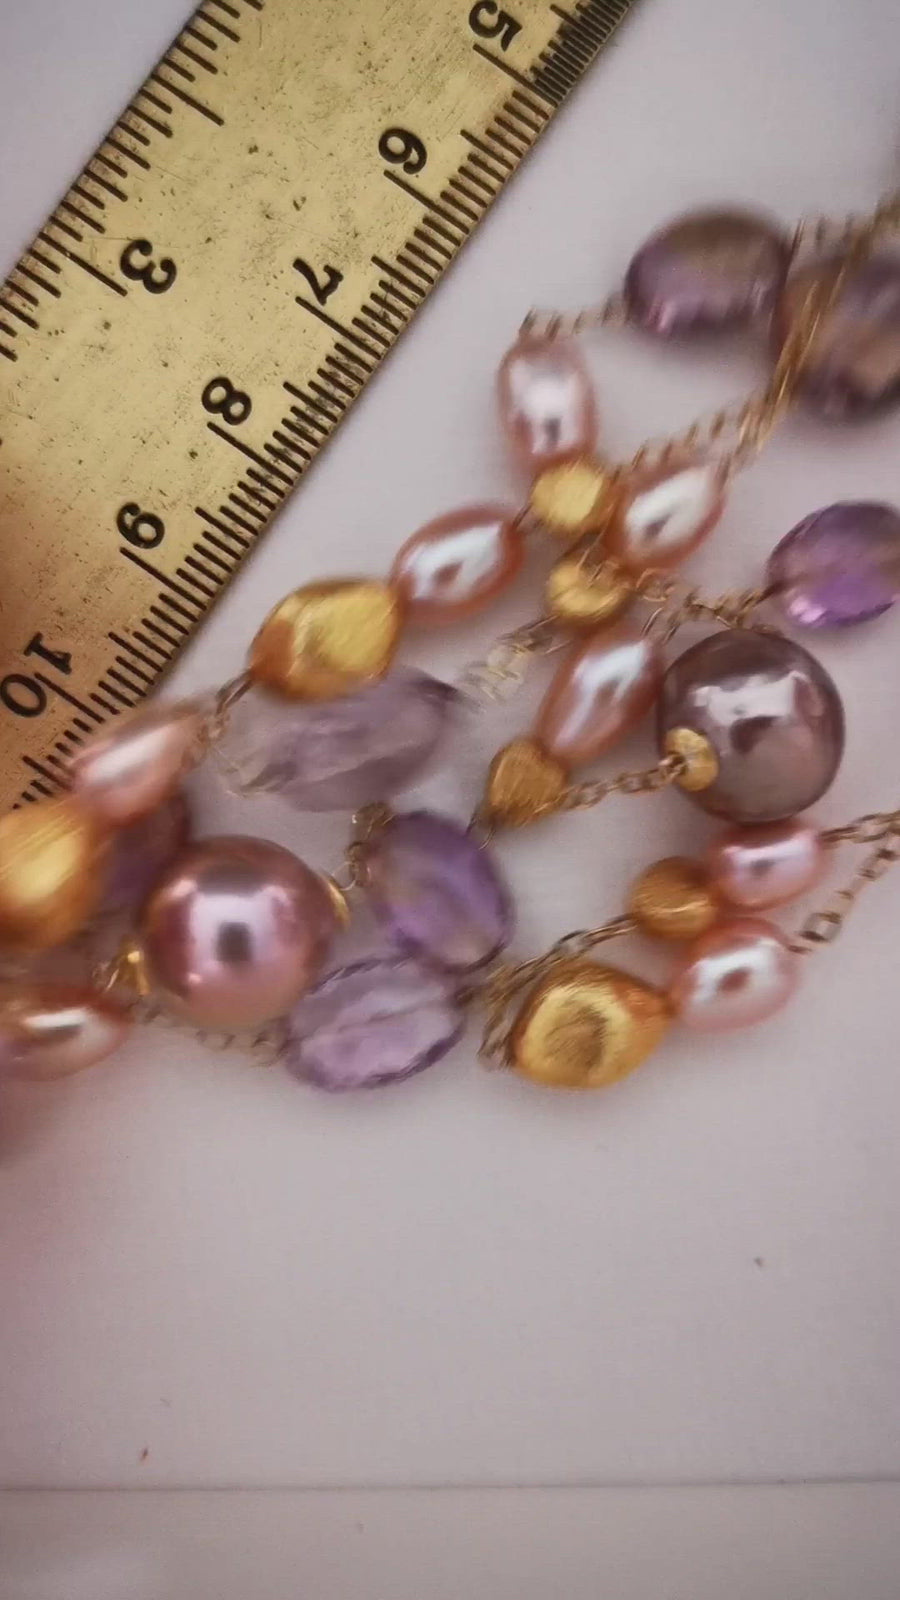 Elegante Perlenkette mit Amethyst in Rosa und Lila